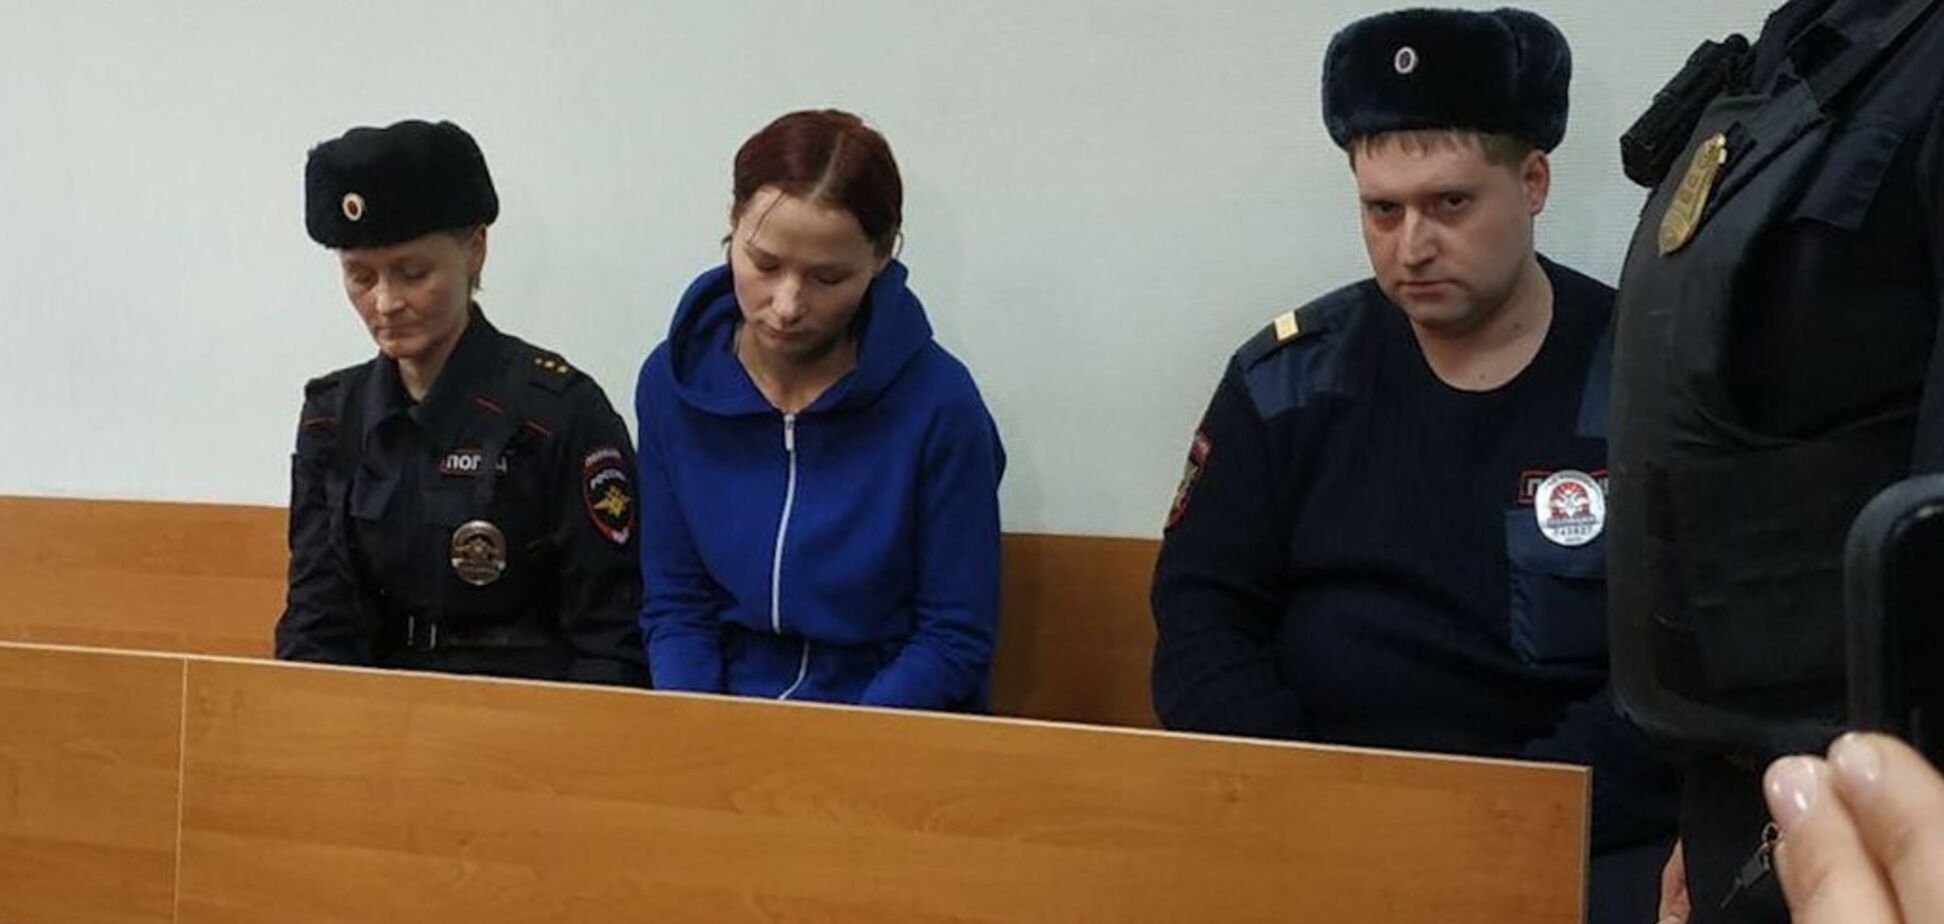 Шел с мешком на голове 12 часов по морозу: всплыли жуткие детали о 'наказании' 6-летнего мальчика из Москвы